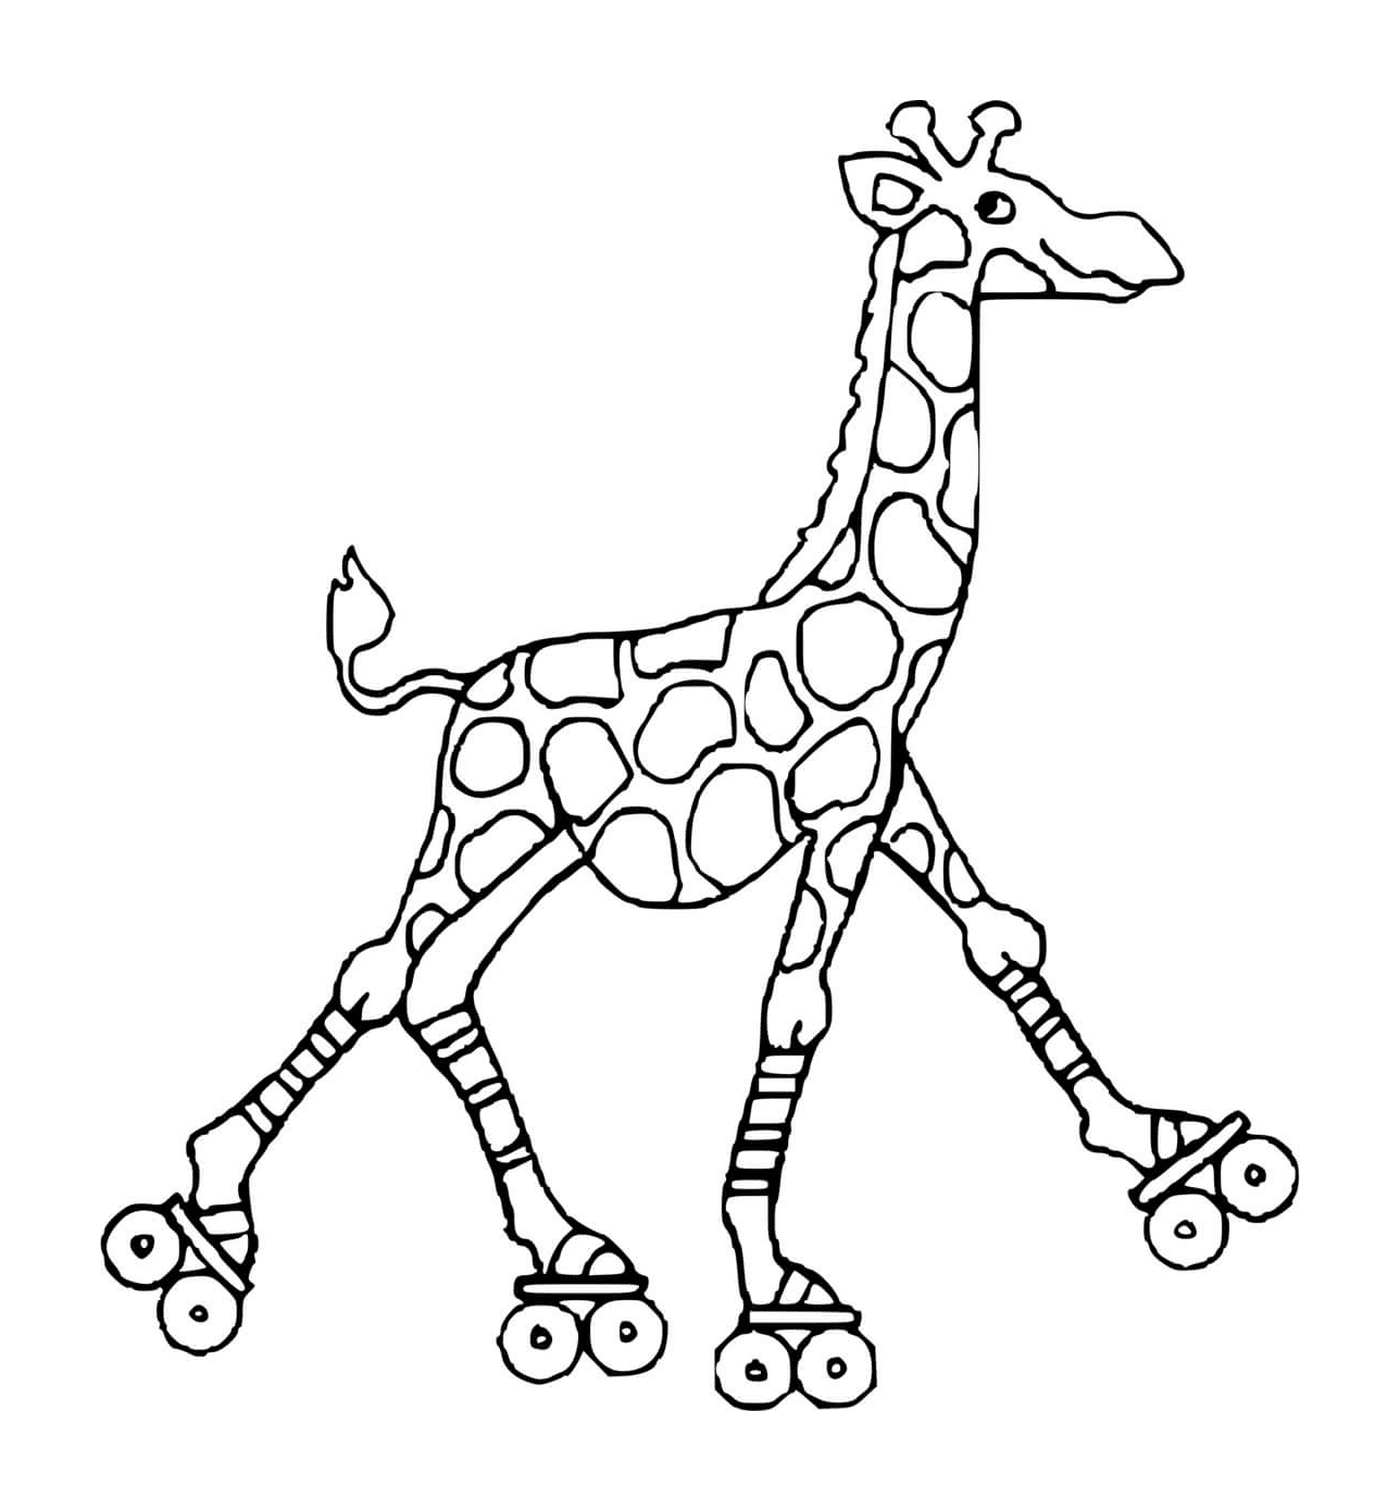   Girafe avec des patins à roulettes 